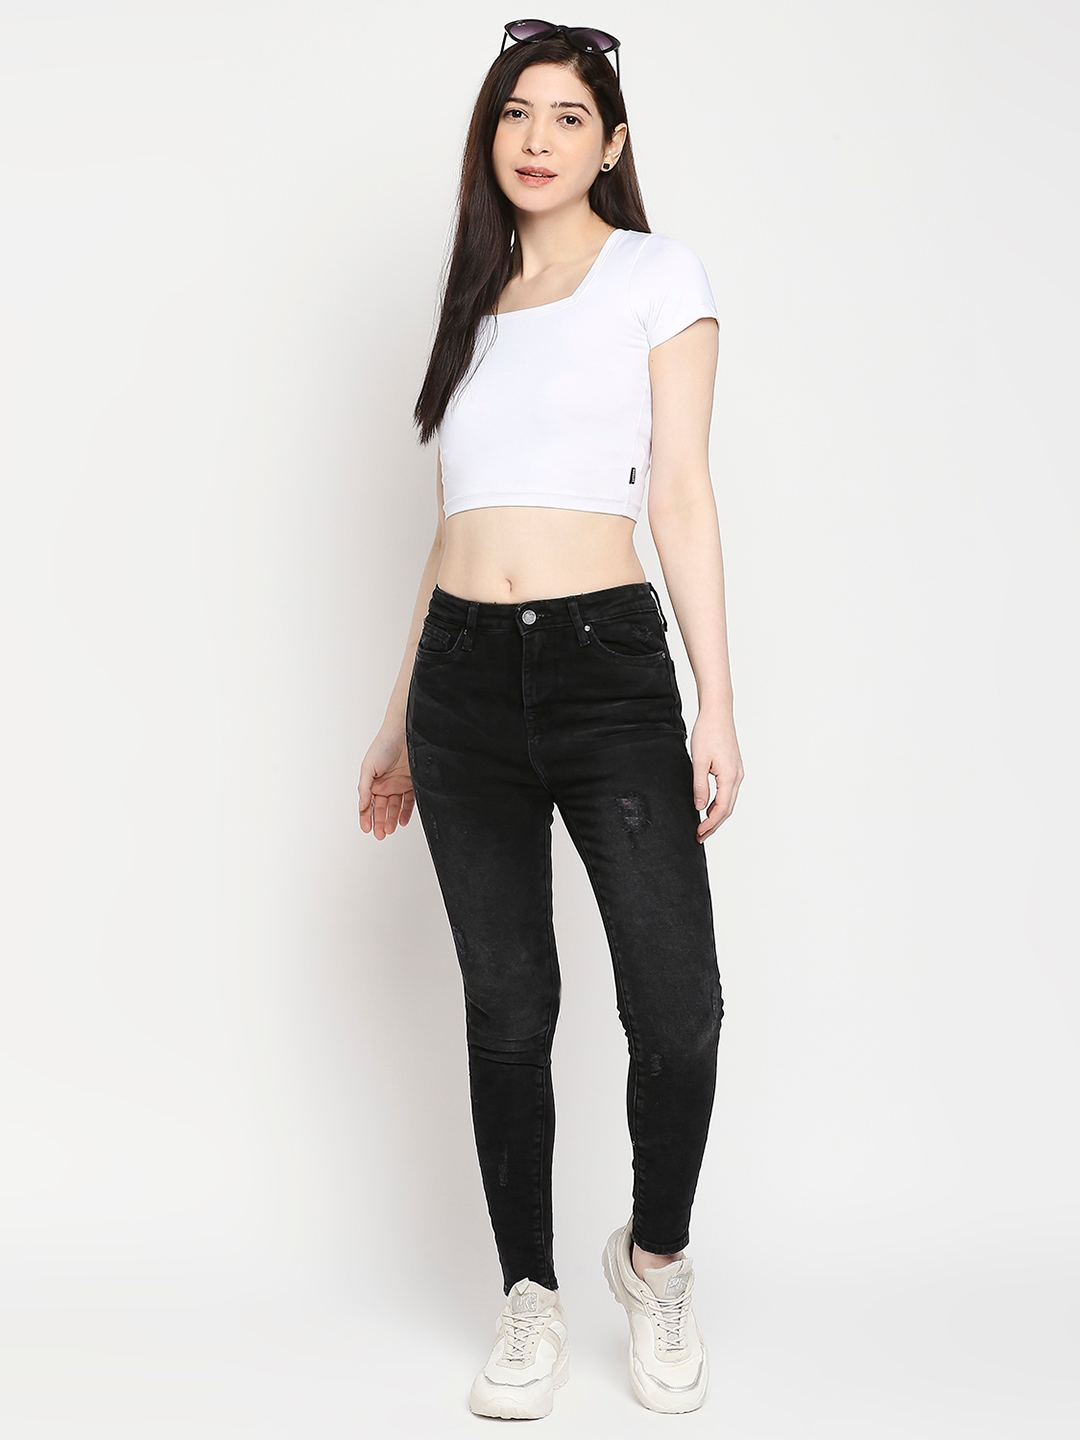 spykar | Women's Black Lycra Solid Jeans 5